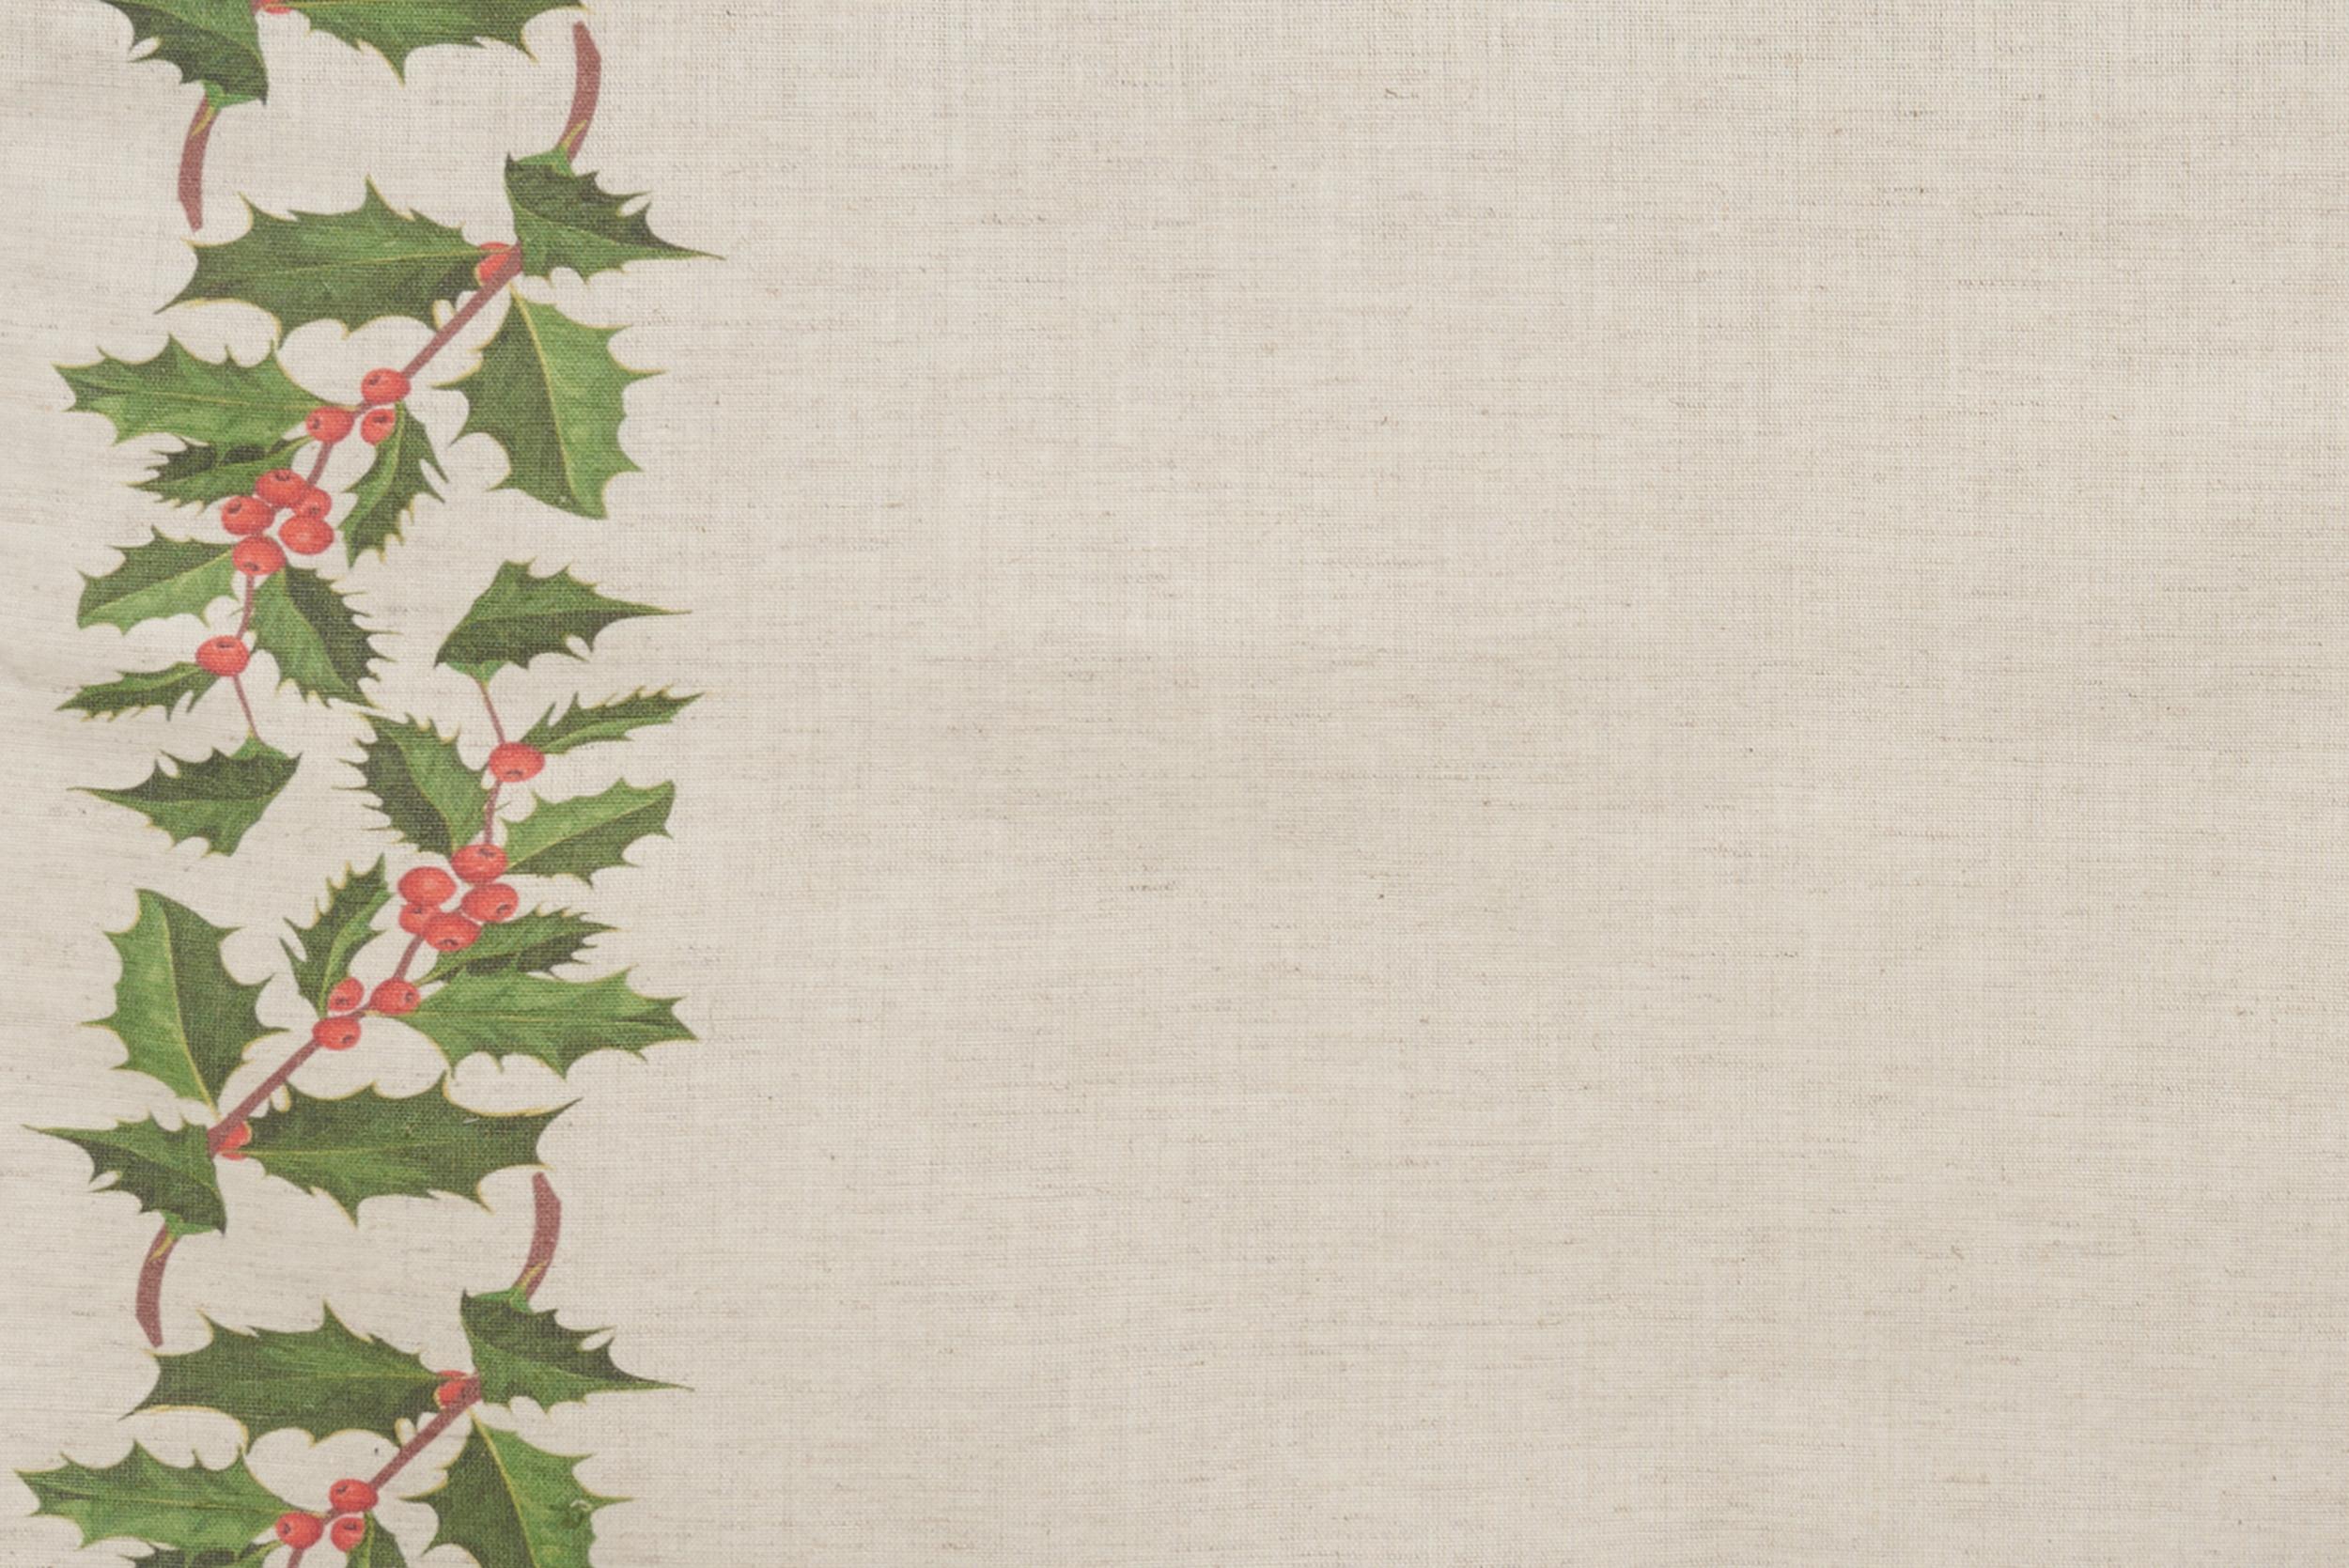 Runner da tavola feste natale natalizia in misto lino decoro natale natalizio morbido resistente elegante made in italy AGRIFOGLIO - Vanita di raso